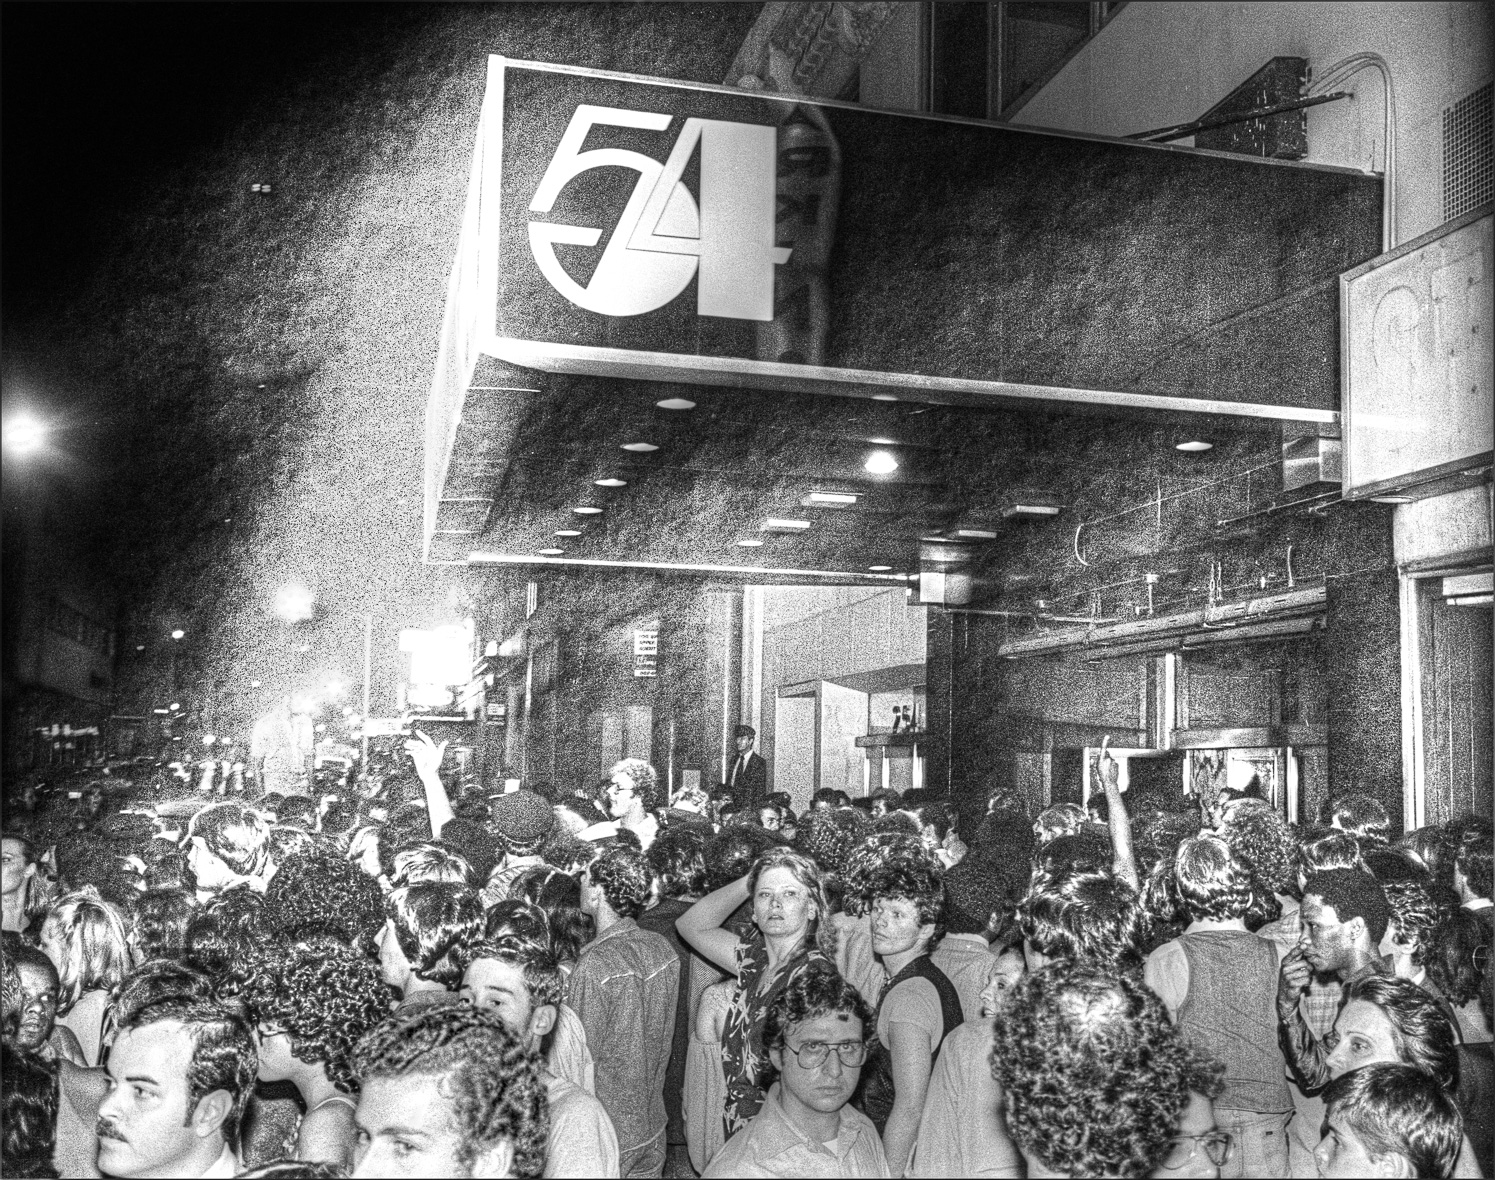 Studio 54 Crowds with logo